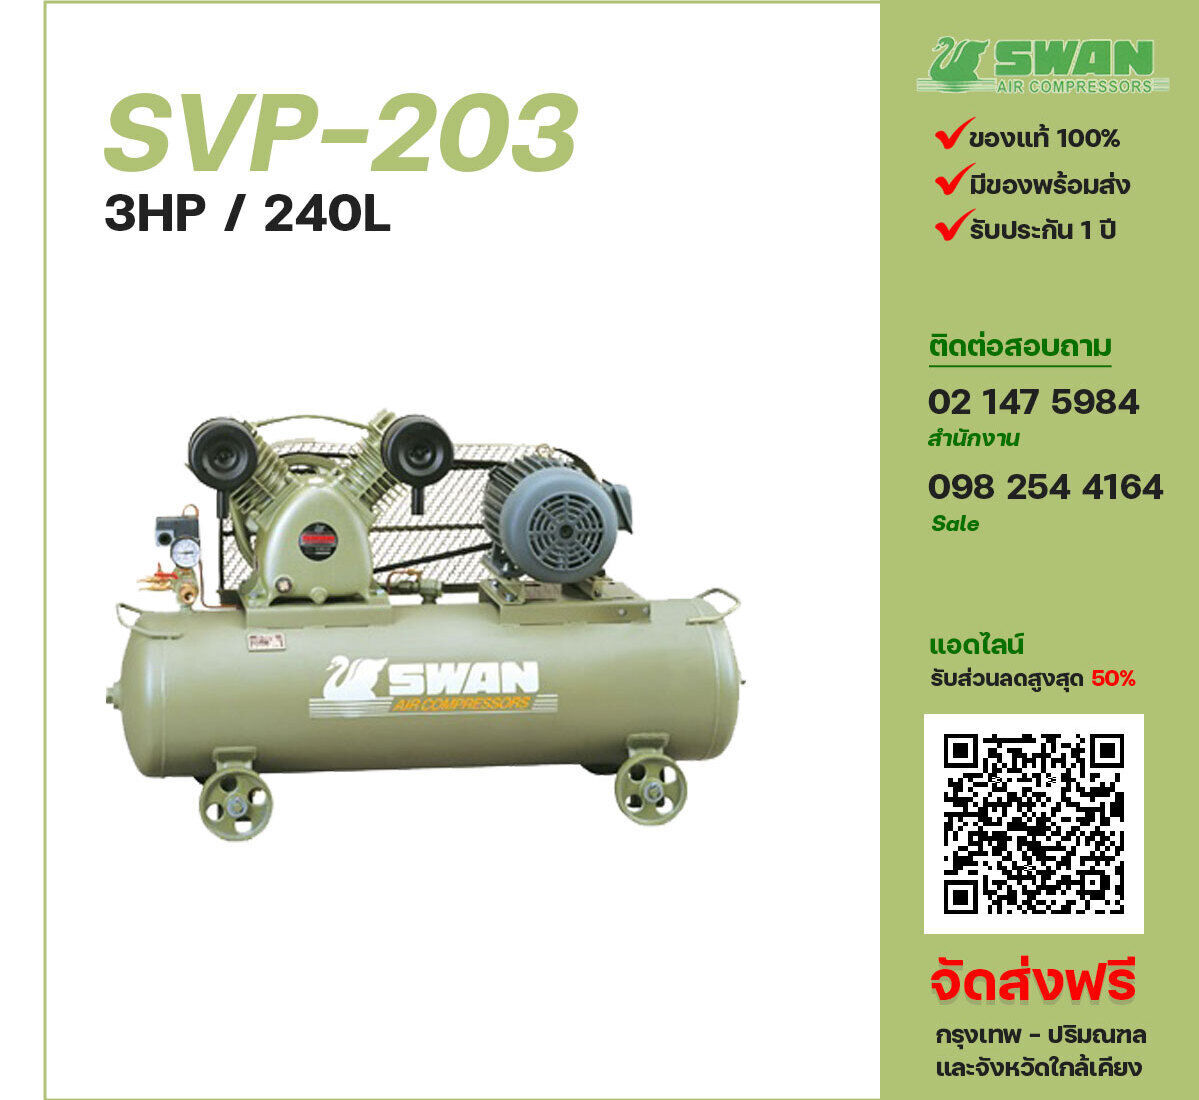 ปั๊มลมสวอน SWAN SVP-203 220V/380V ปั๊มลมลูกสูบ ขนาด 2 สูบ 3 แรงม้า 155 ลิตร SWAN พร้อมมอเตอร์ ไฟ 220V/380V ส่งฟรี กรุงเทพฯ-ปริมณฑล รับประกัน 1 ปี